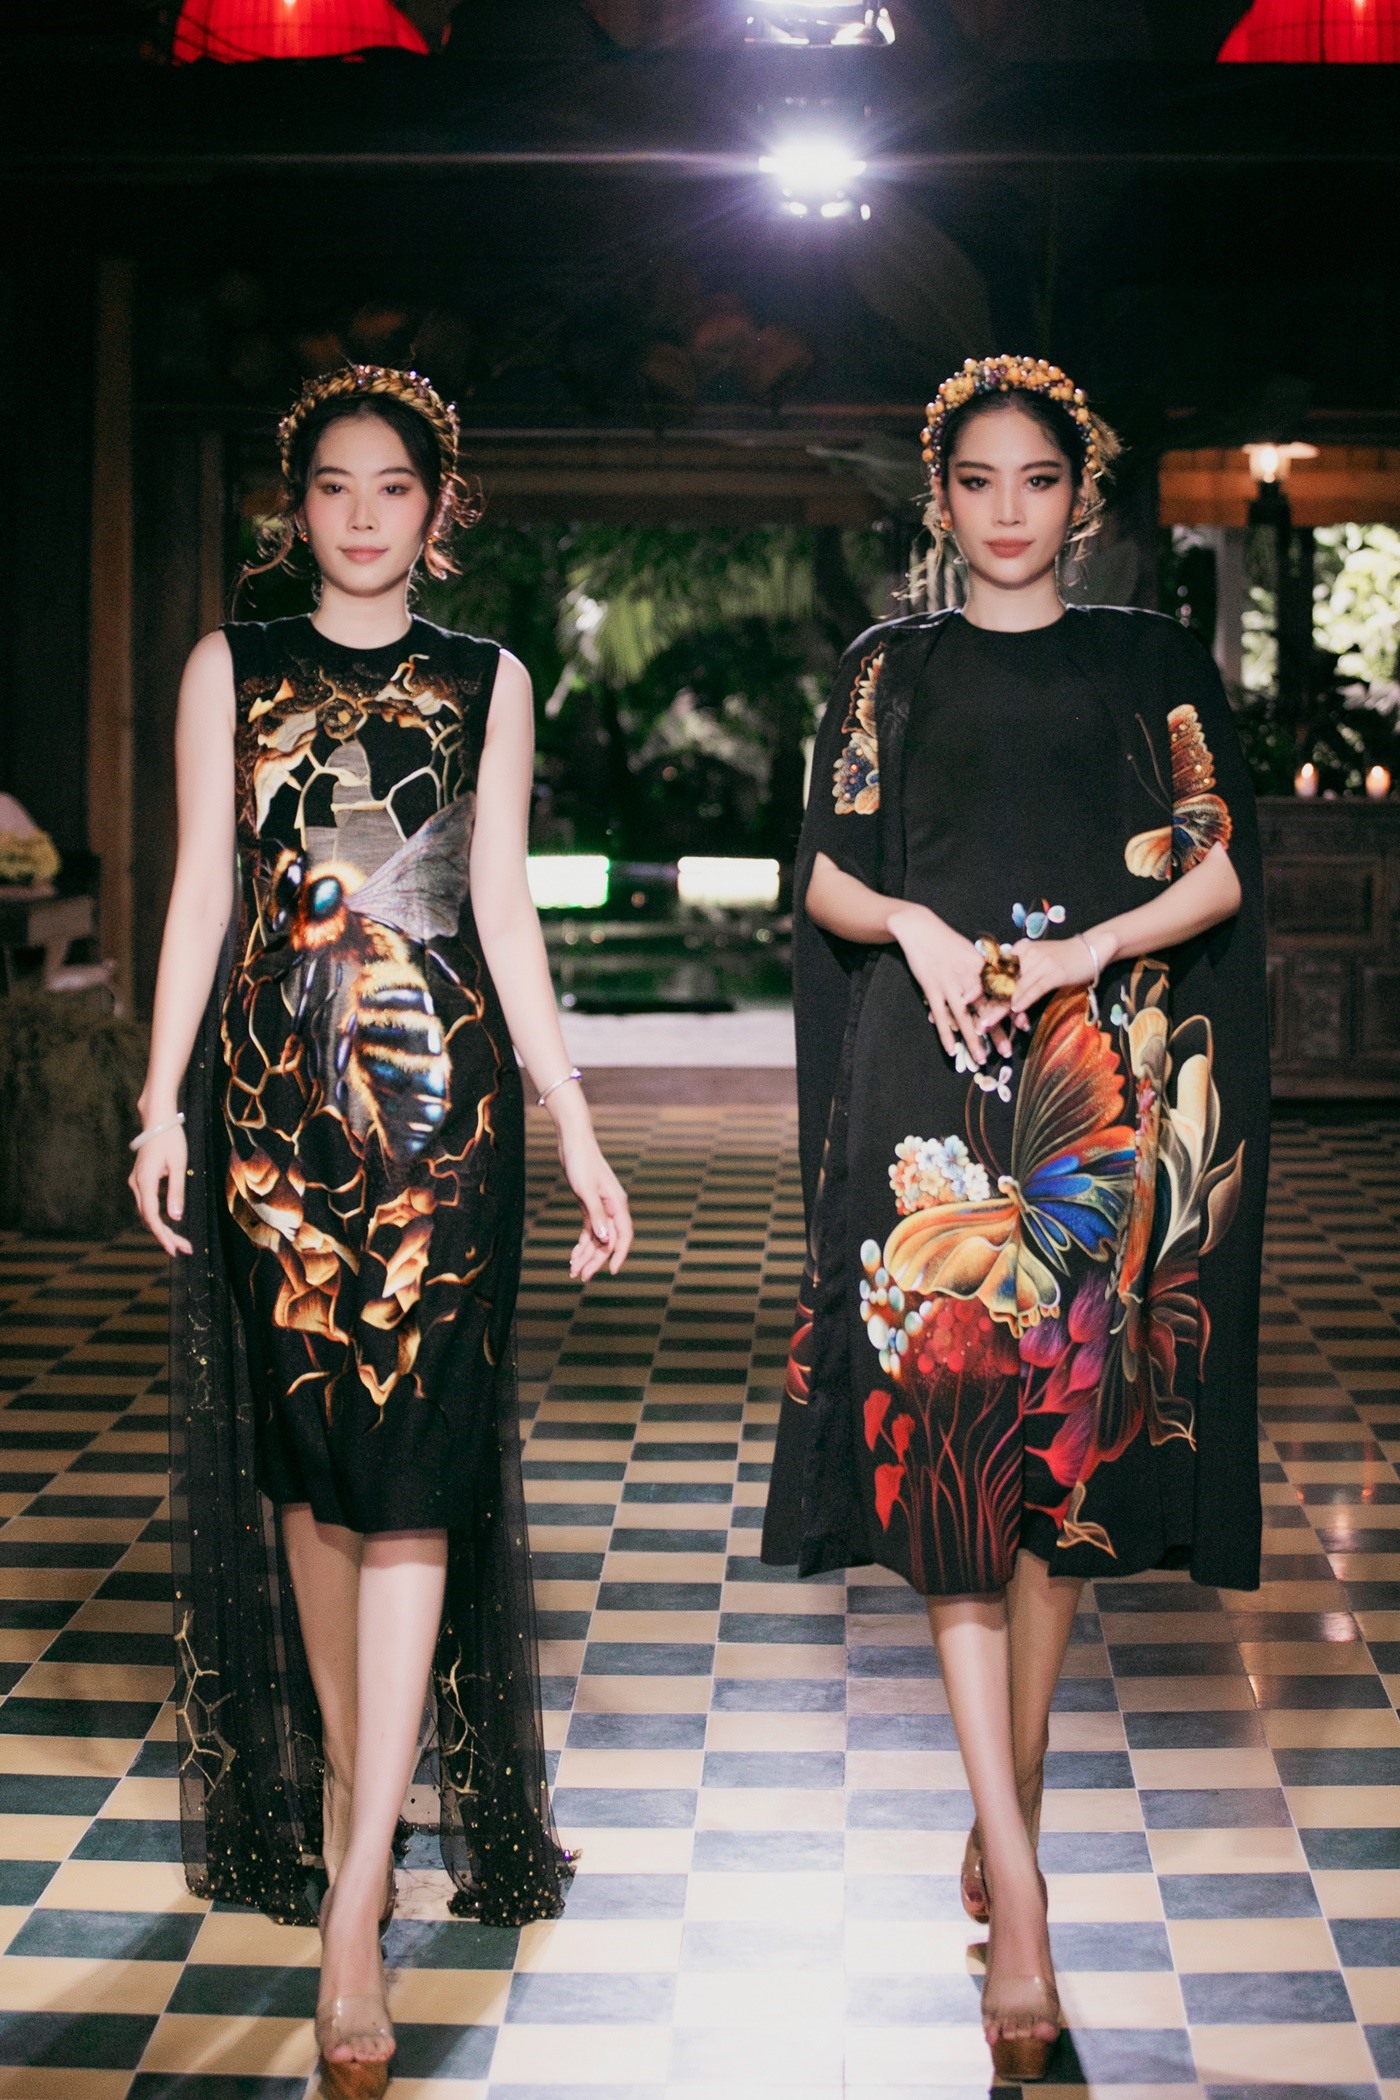 Mở màn phần 2 là cặp chị em Nam Em - Lệ Nam với màu sắc đen huyền lóng lánh những họa tiết như từng ánh trăng rơi rũ trên mái tóc óng của người con gái Việt Nam.